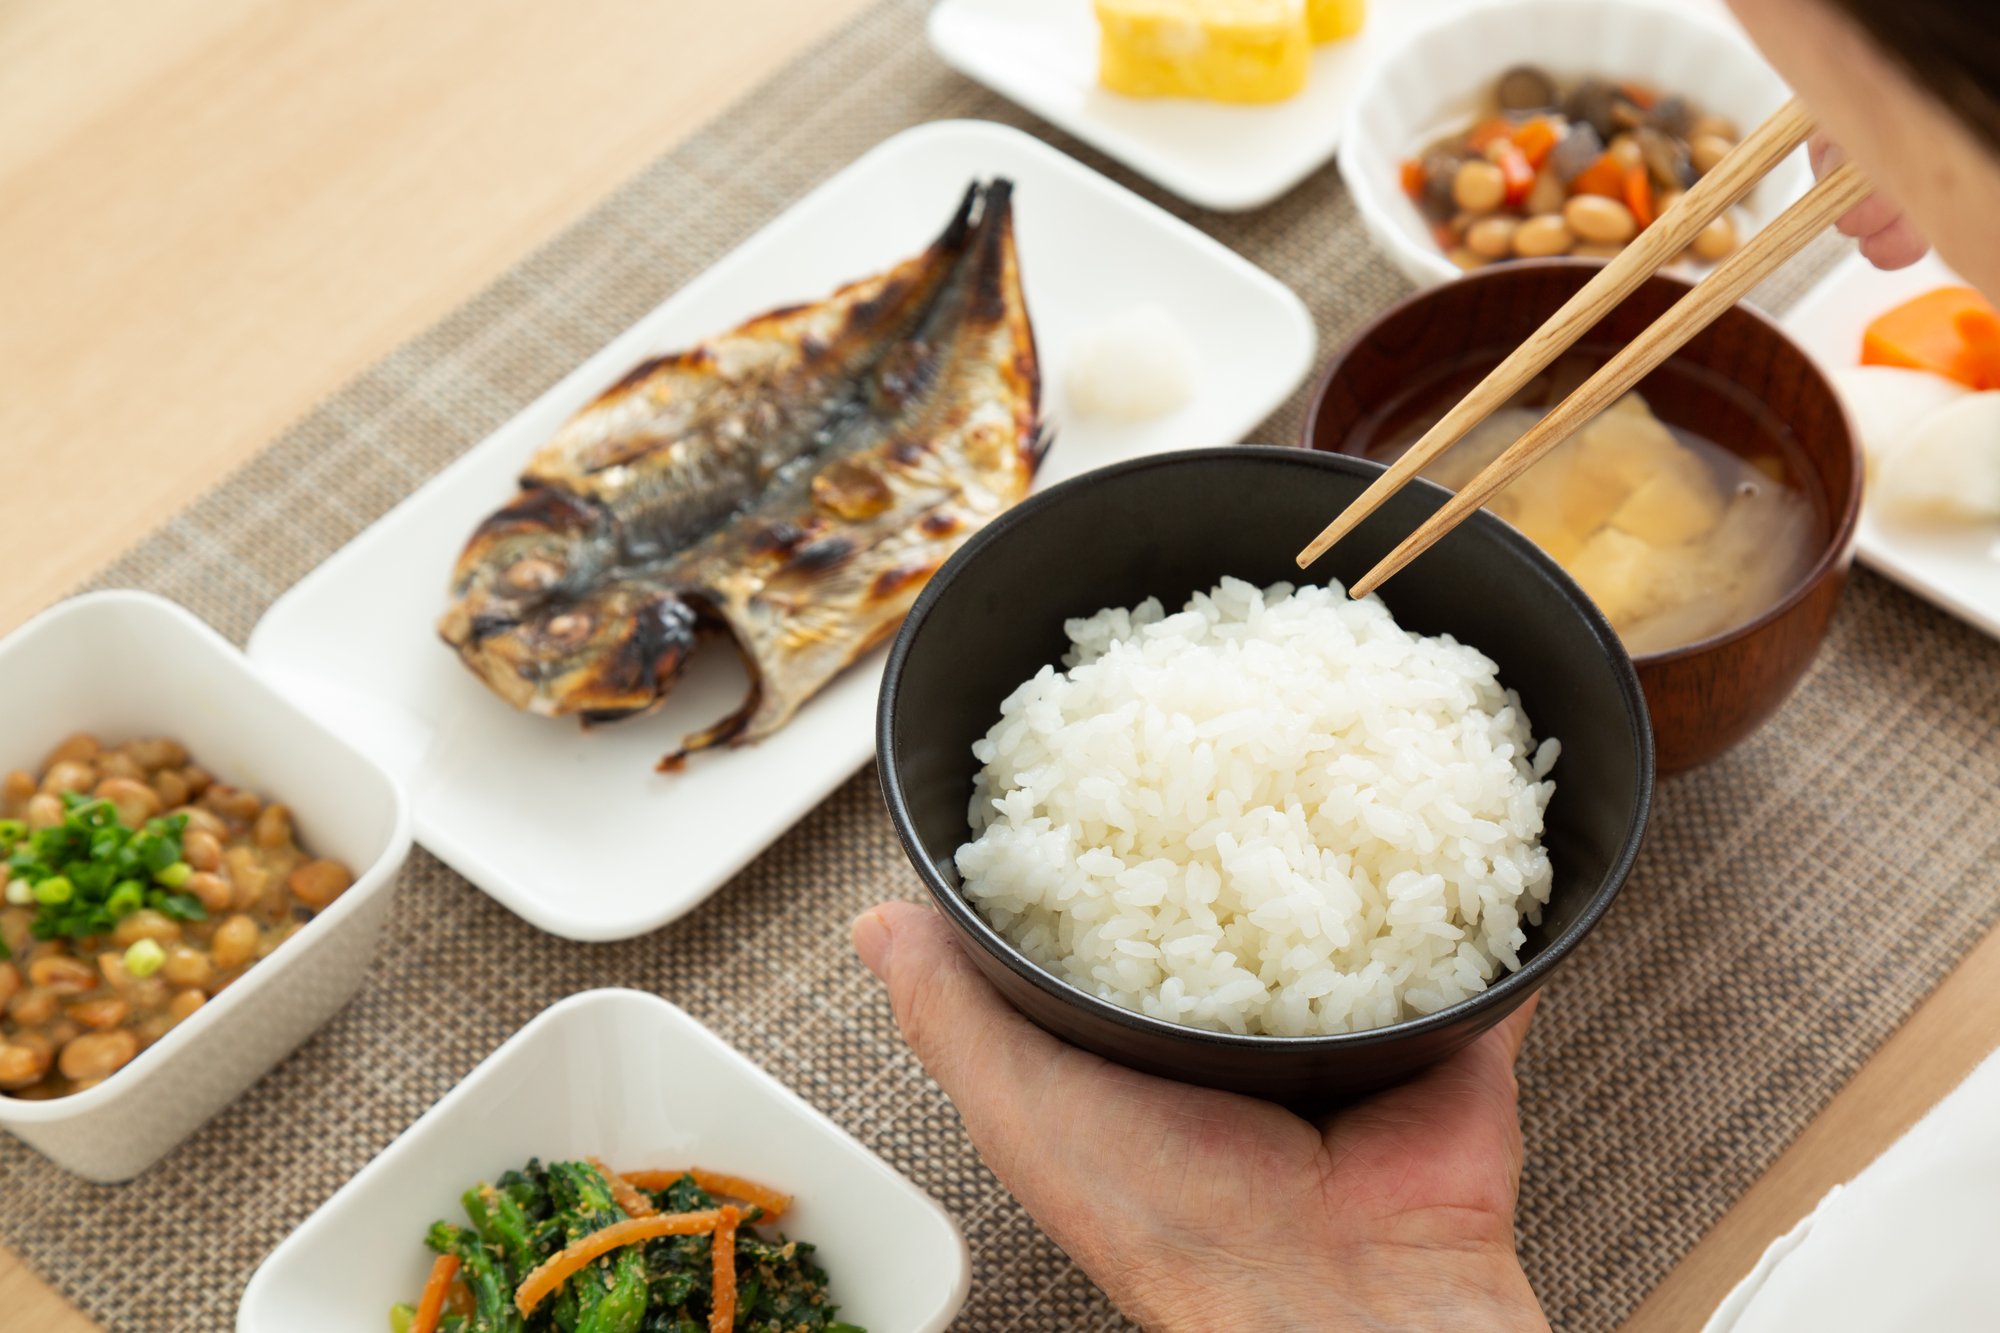 日本食は死亡リスクを下げる！やはり「健康長寿食」だった - ヘルスデーニュース